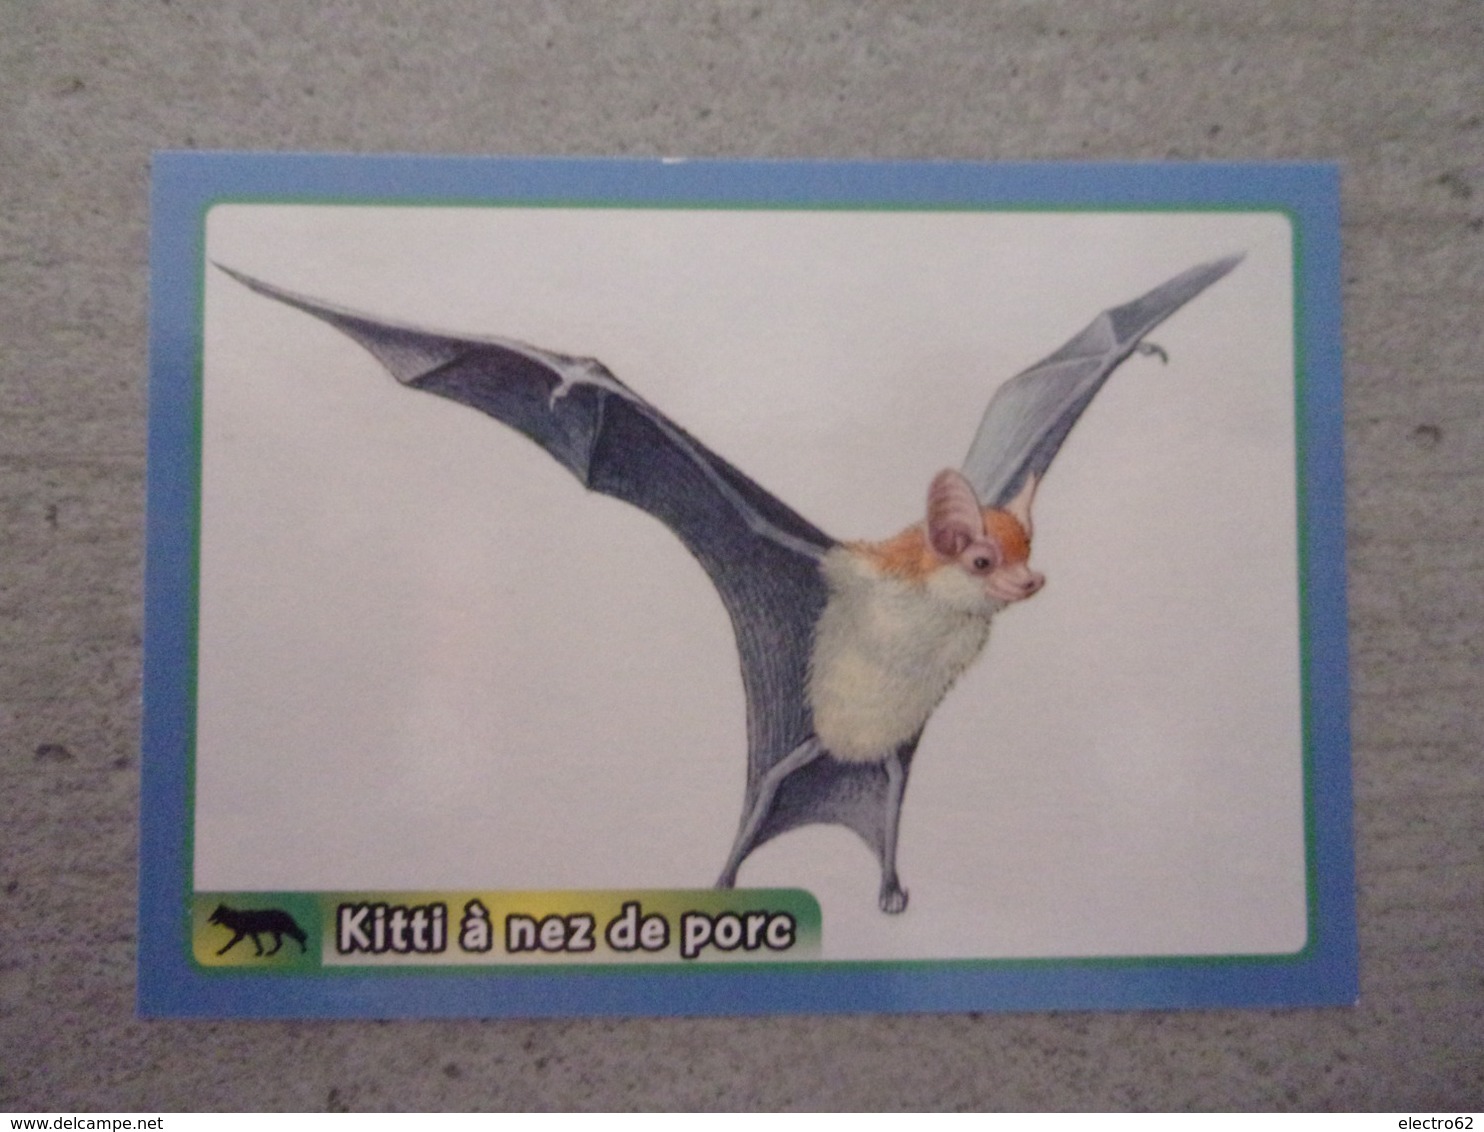 PANINI ANIMAL WORLD Animaux N°442 Chauve-souris Kitti à Nez De Porc Bumblebee Bat - Französische Ausgabe